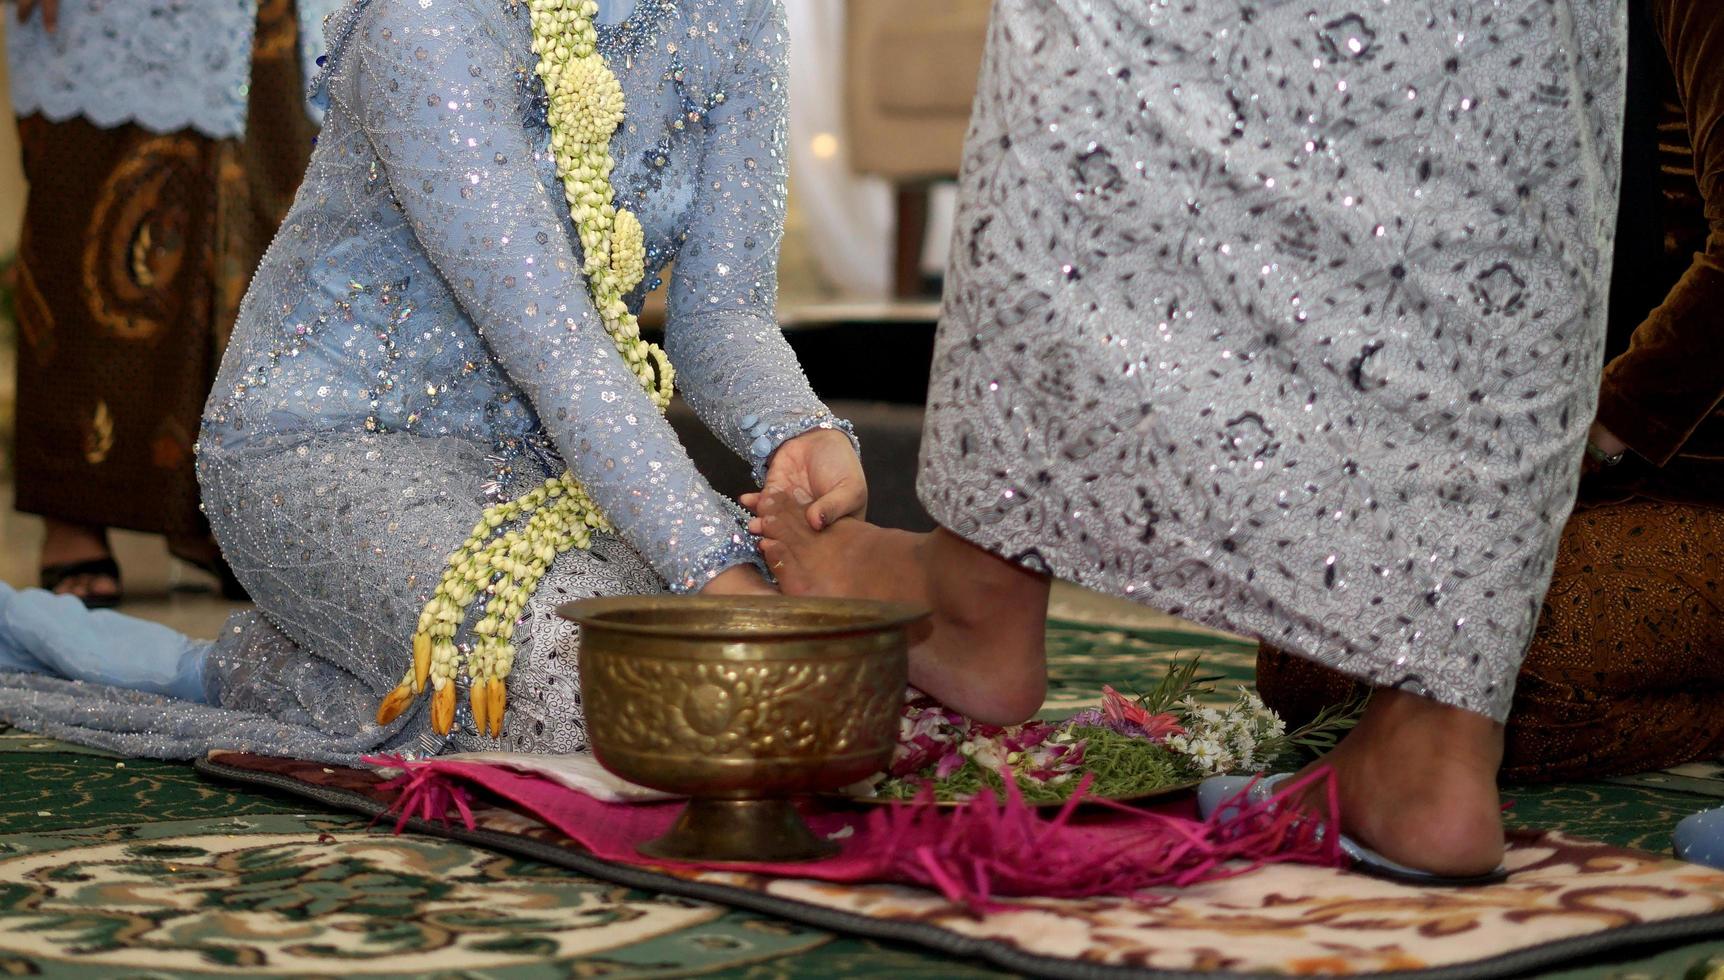 braut wäscht dem bräutigam die füße in der traditionellen hochzeitszeremonie in indonesien foto